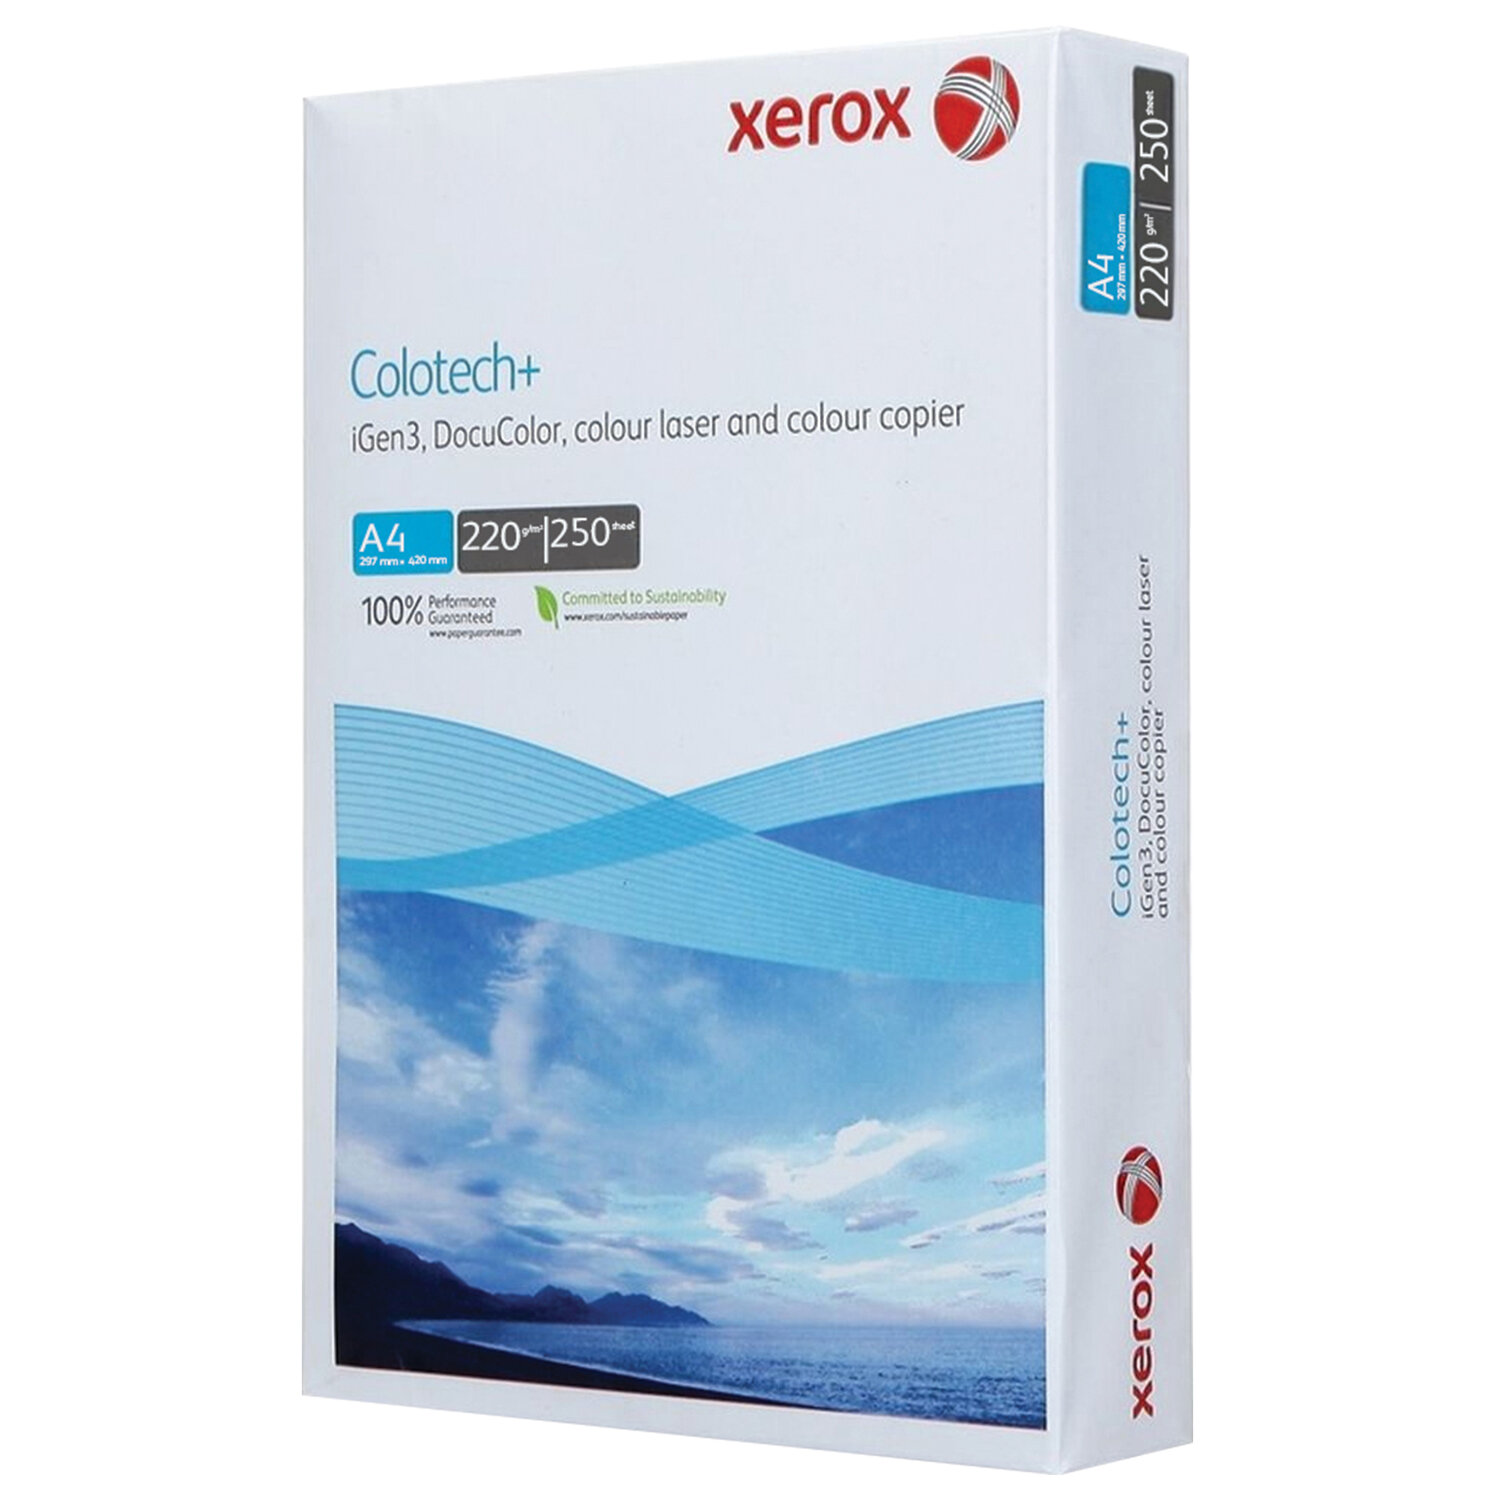      XEROX COLOTECH+ Blue 003R94668, 4, 220 /2, 250 ., 161%